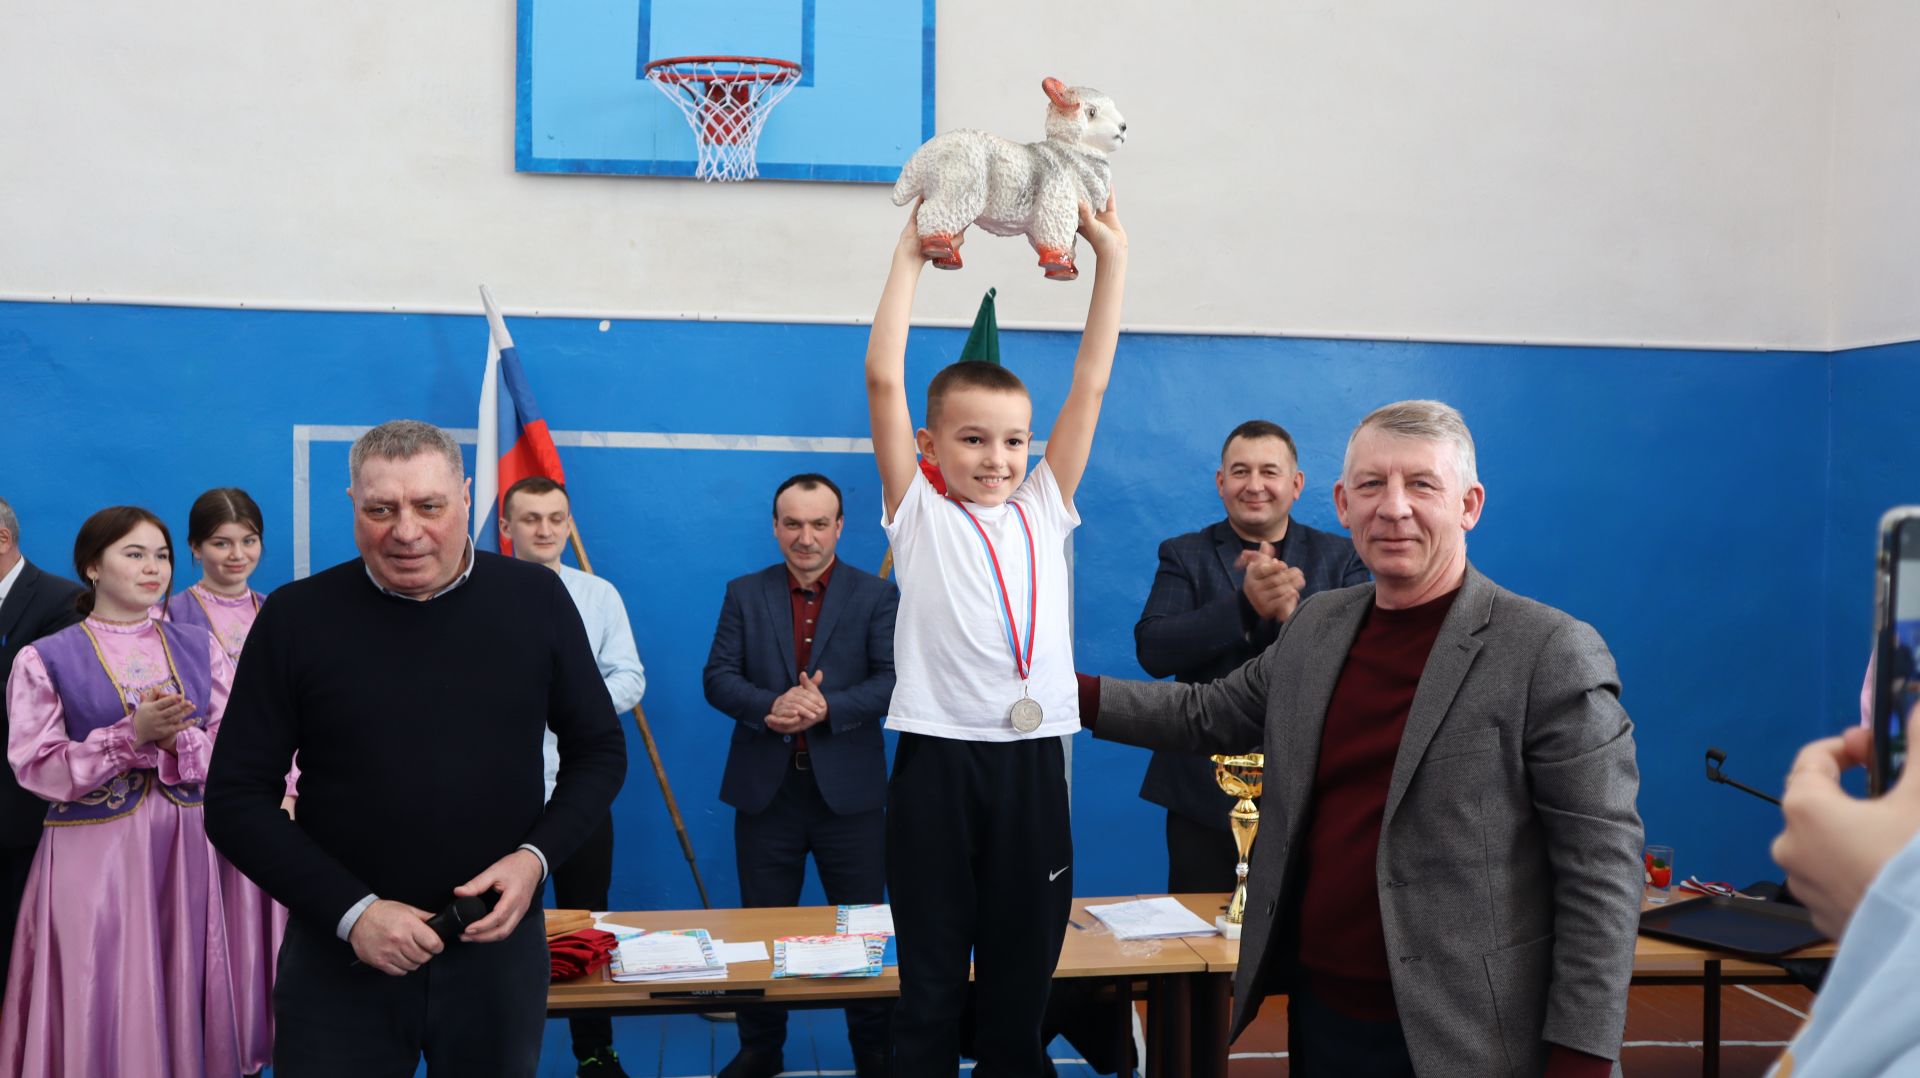 Соревнования по борьбе көрәш прошли в Дрожжановском районе